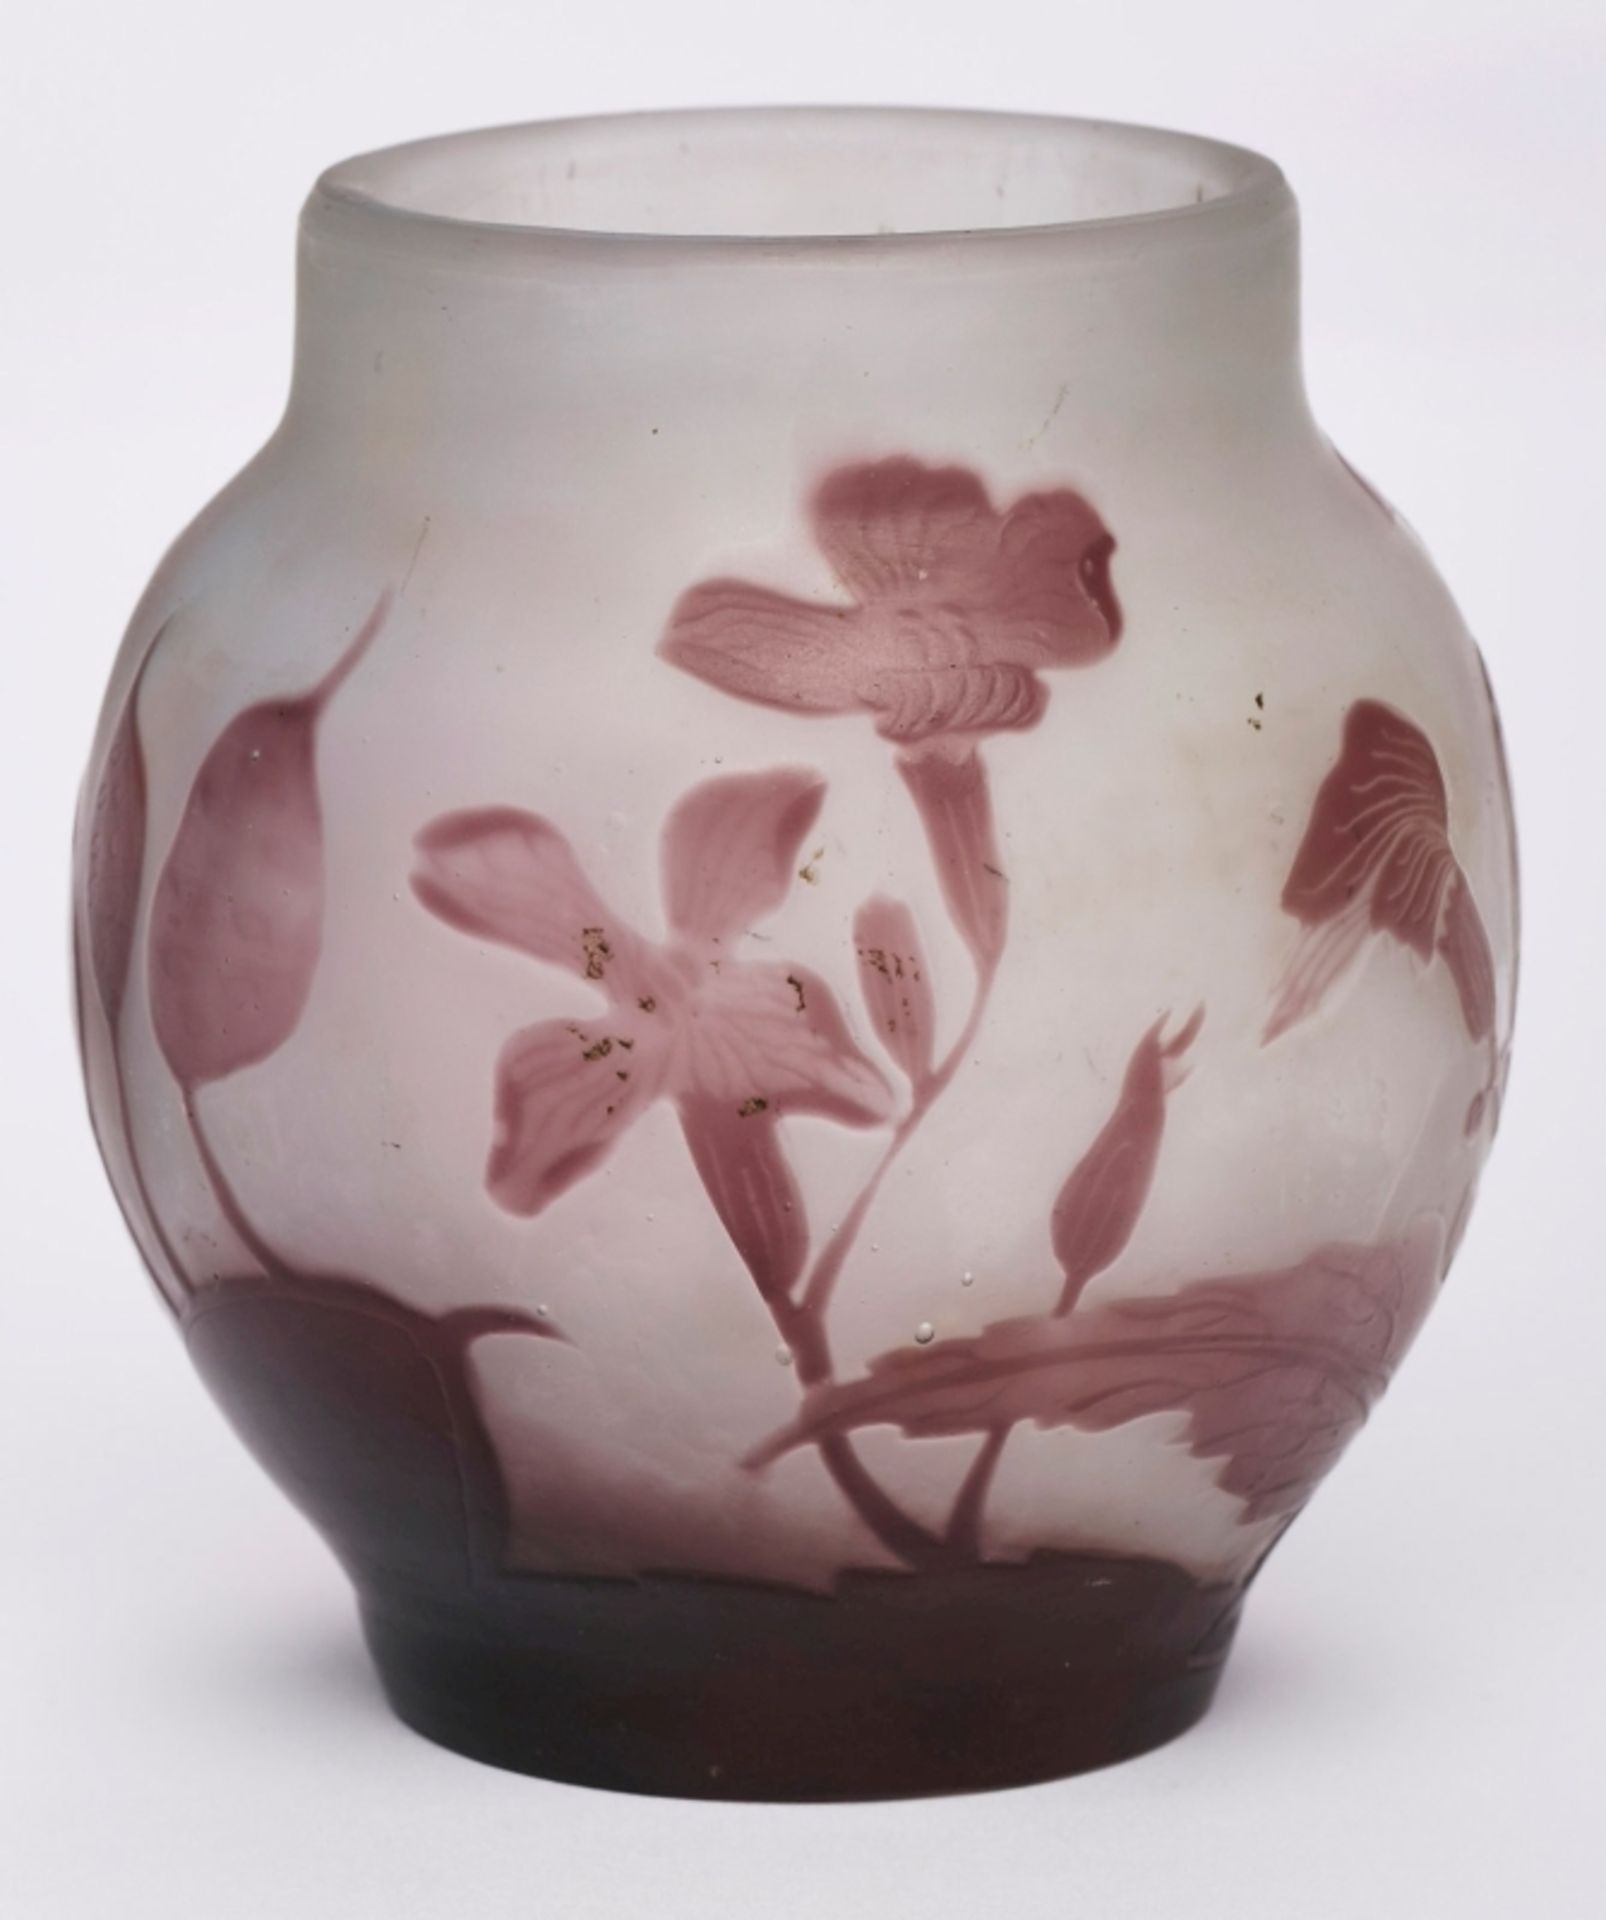 Kl. Vase "Veilchen", Jugendstil, Gallé um 1910.